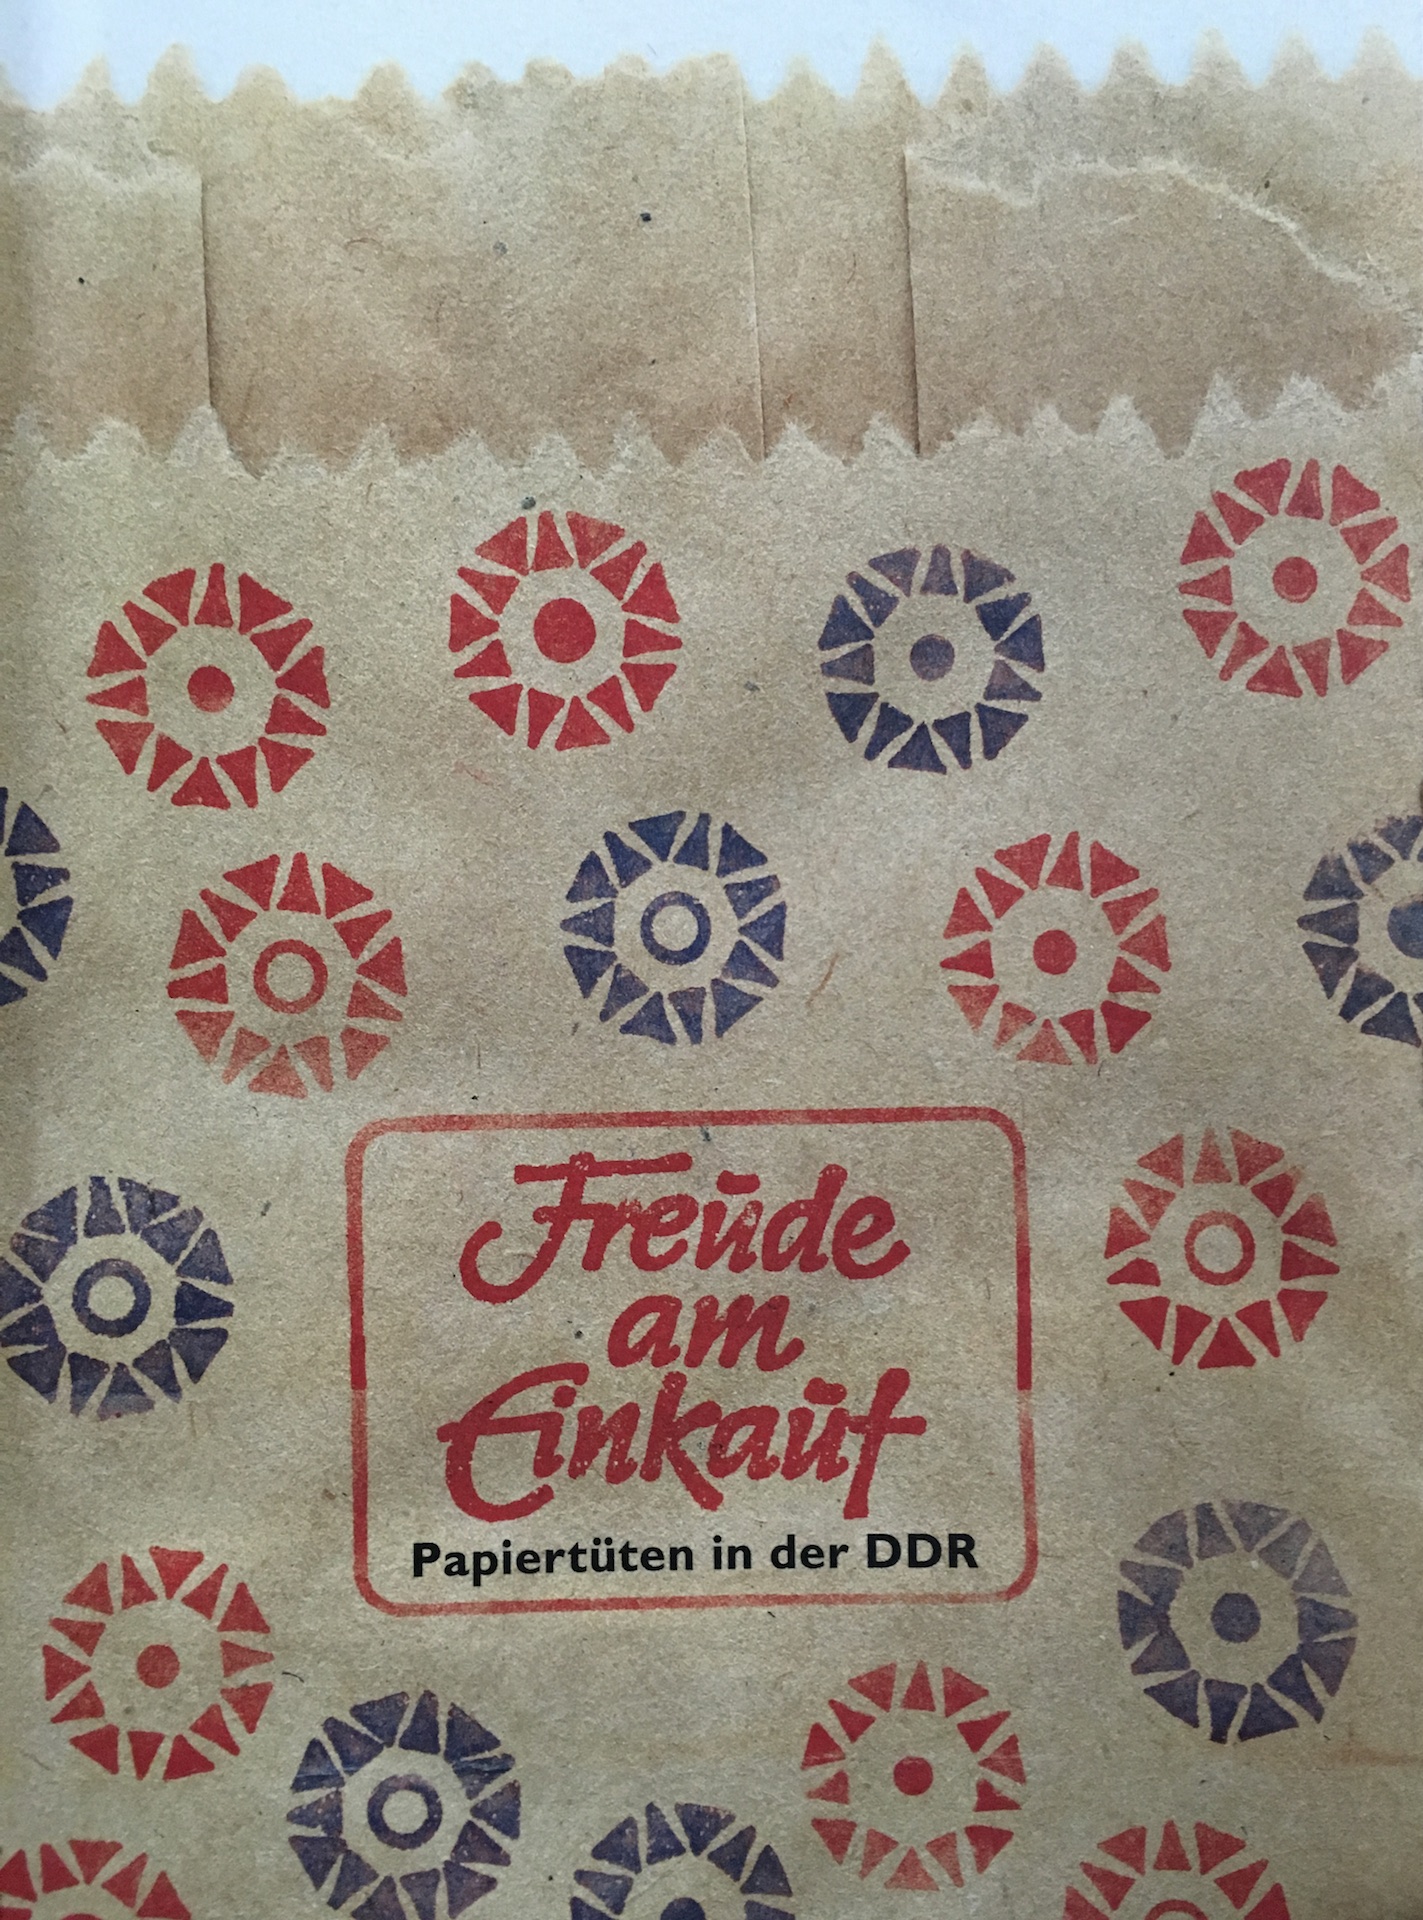 Freude am Einkauf - Tüten in der DDR, Bild: Berlin: Bien & Giersch Projektagentur, 2015.